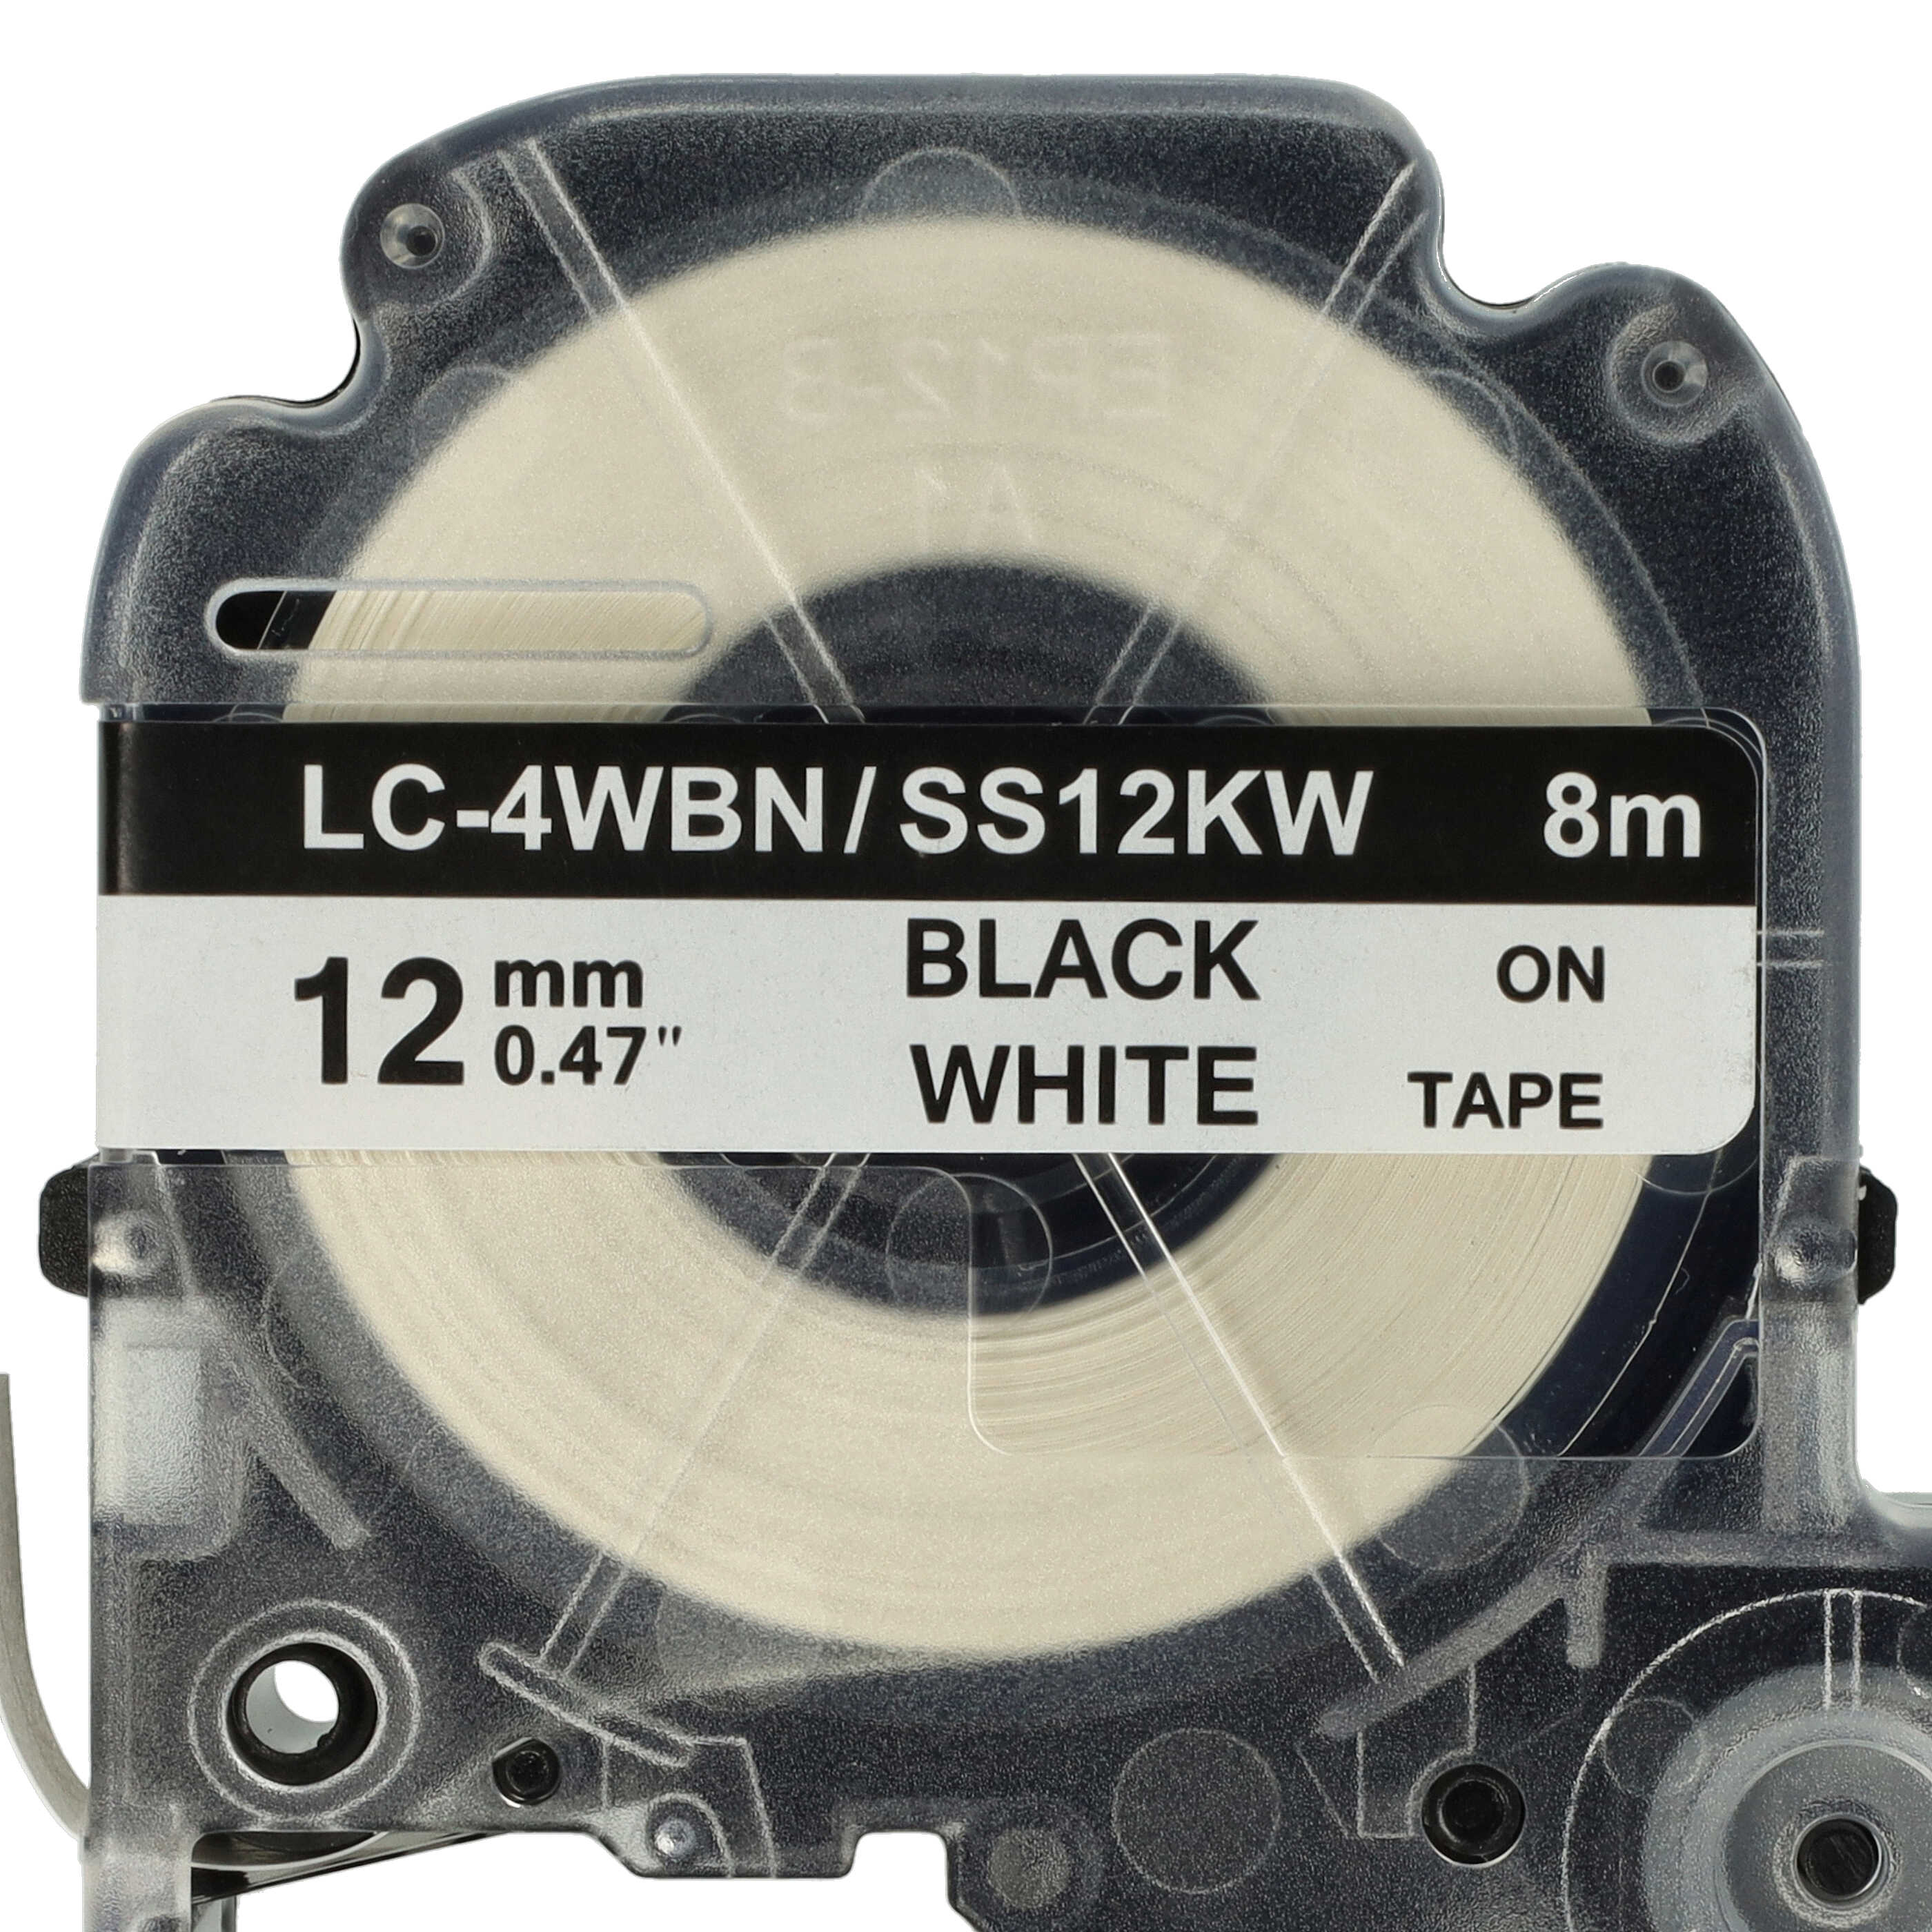 3x Taśma do etykiet zam. Epson SS12KW, LC-4WBN - 12mm, napis czarny / taśma biała